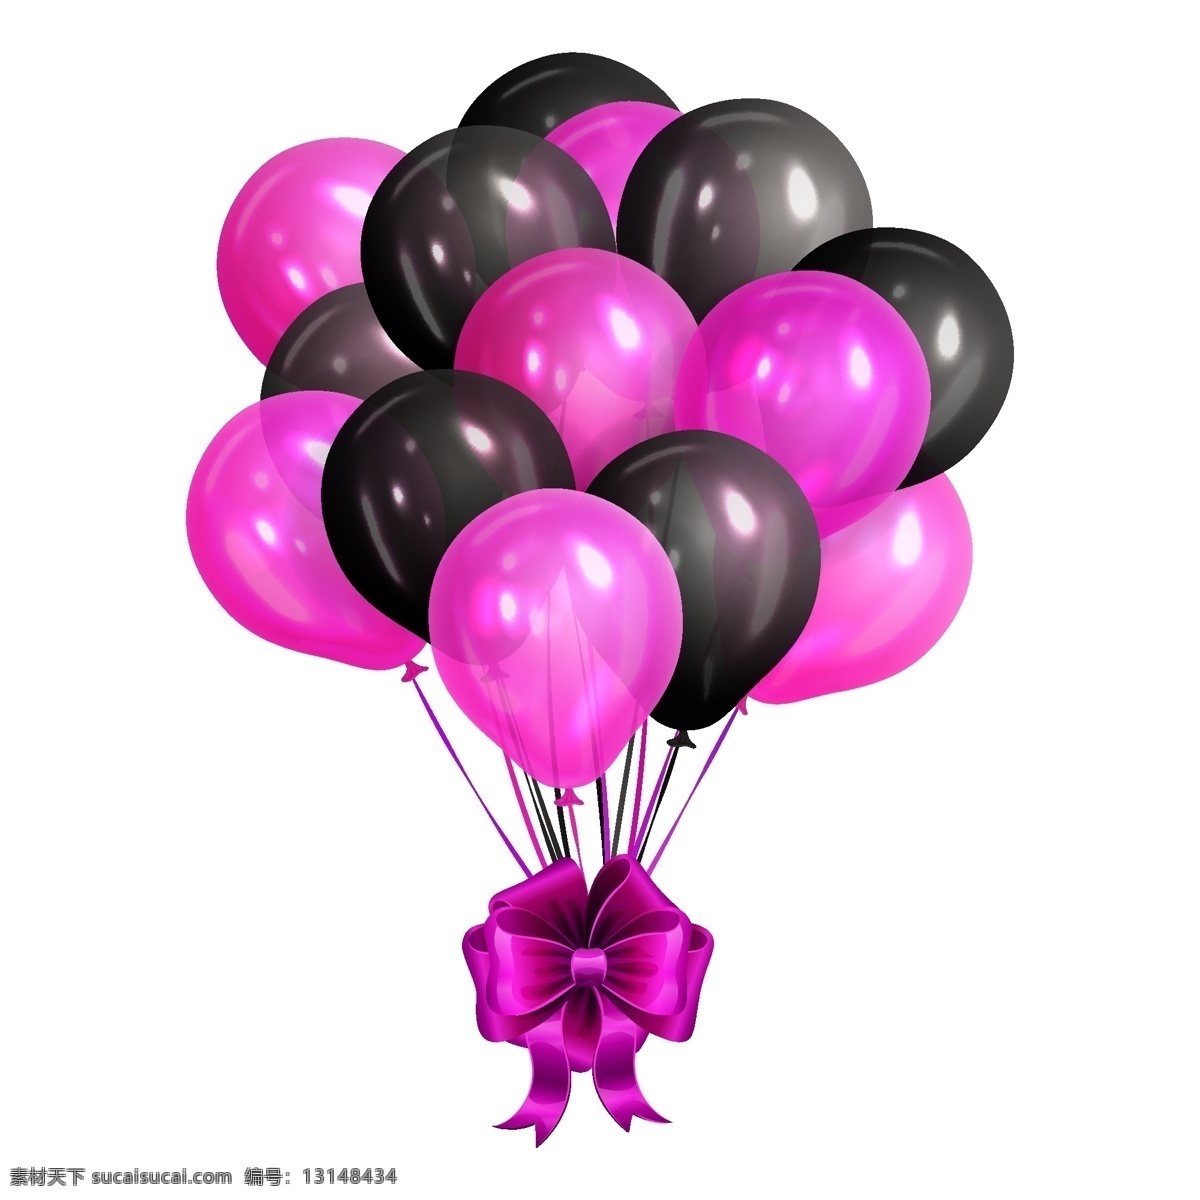 精美 紫色 气球 束 矢量 精致 黑色 节日 蝴蝶结 静物